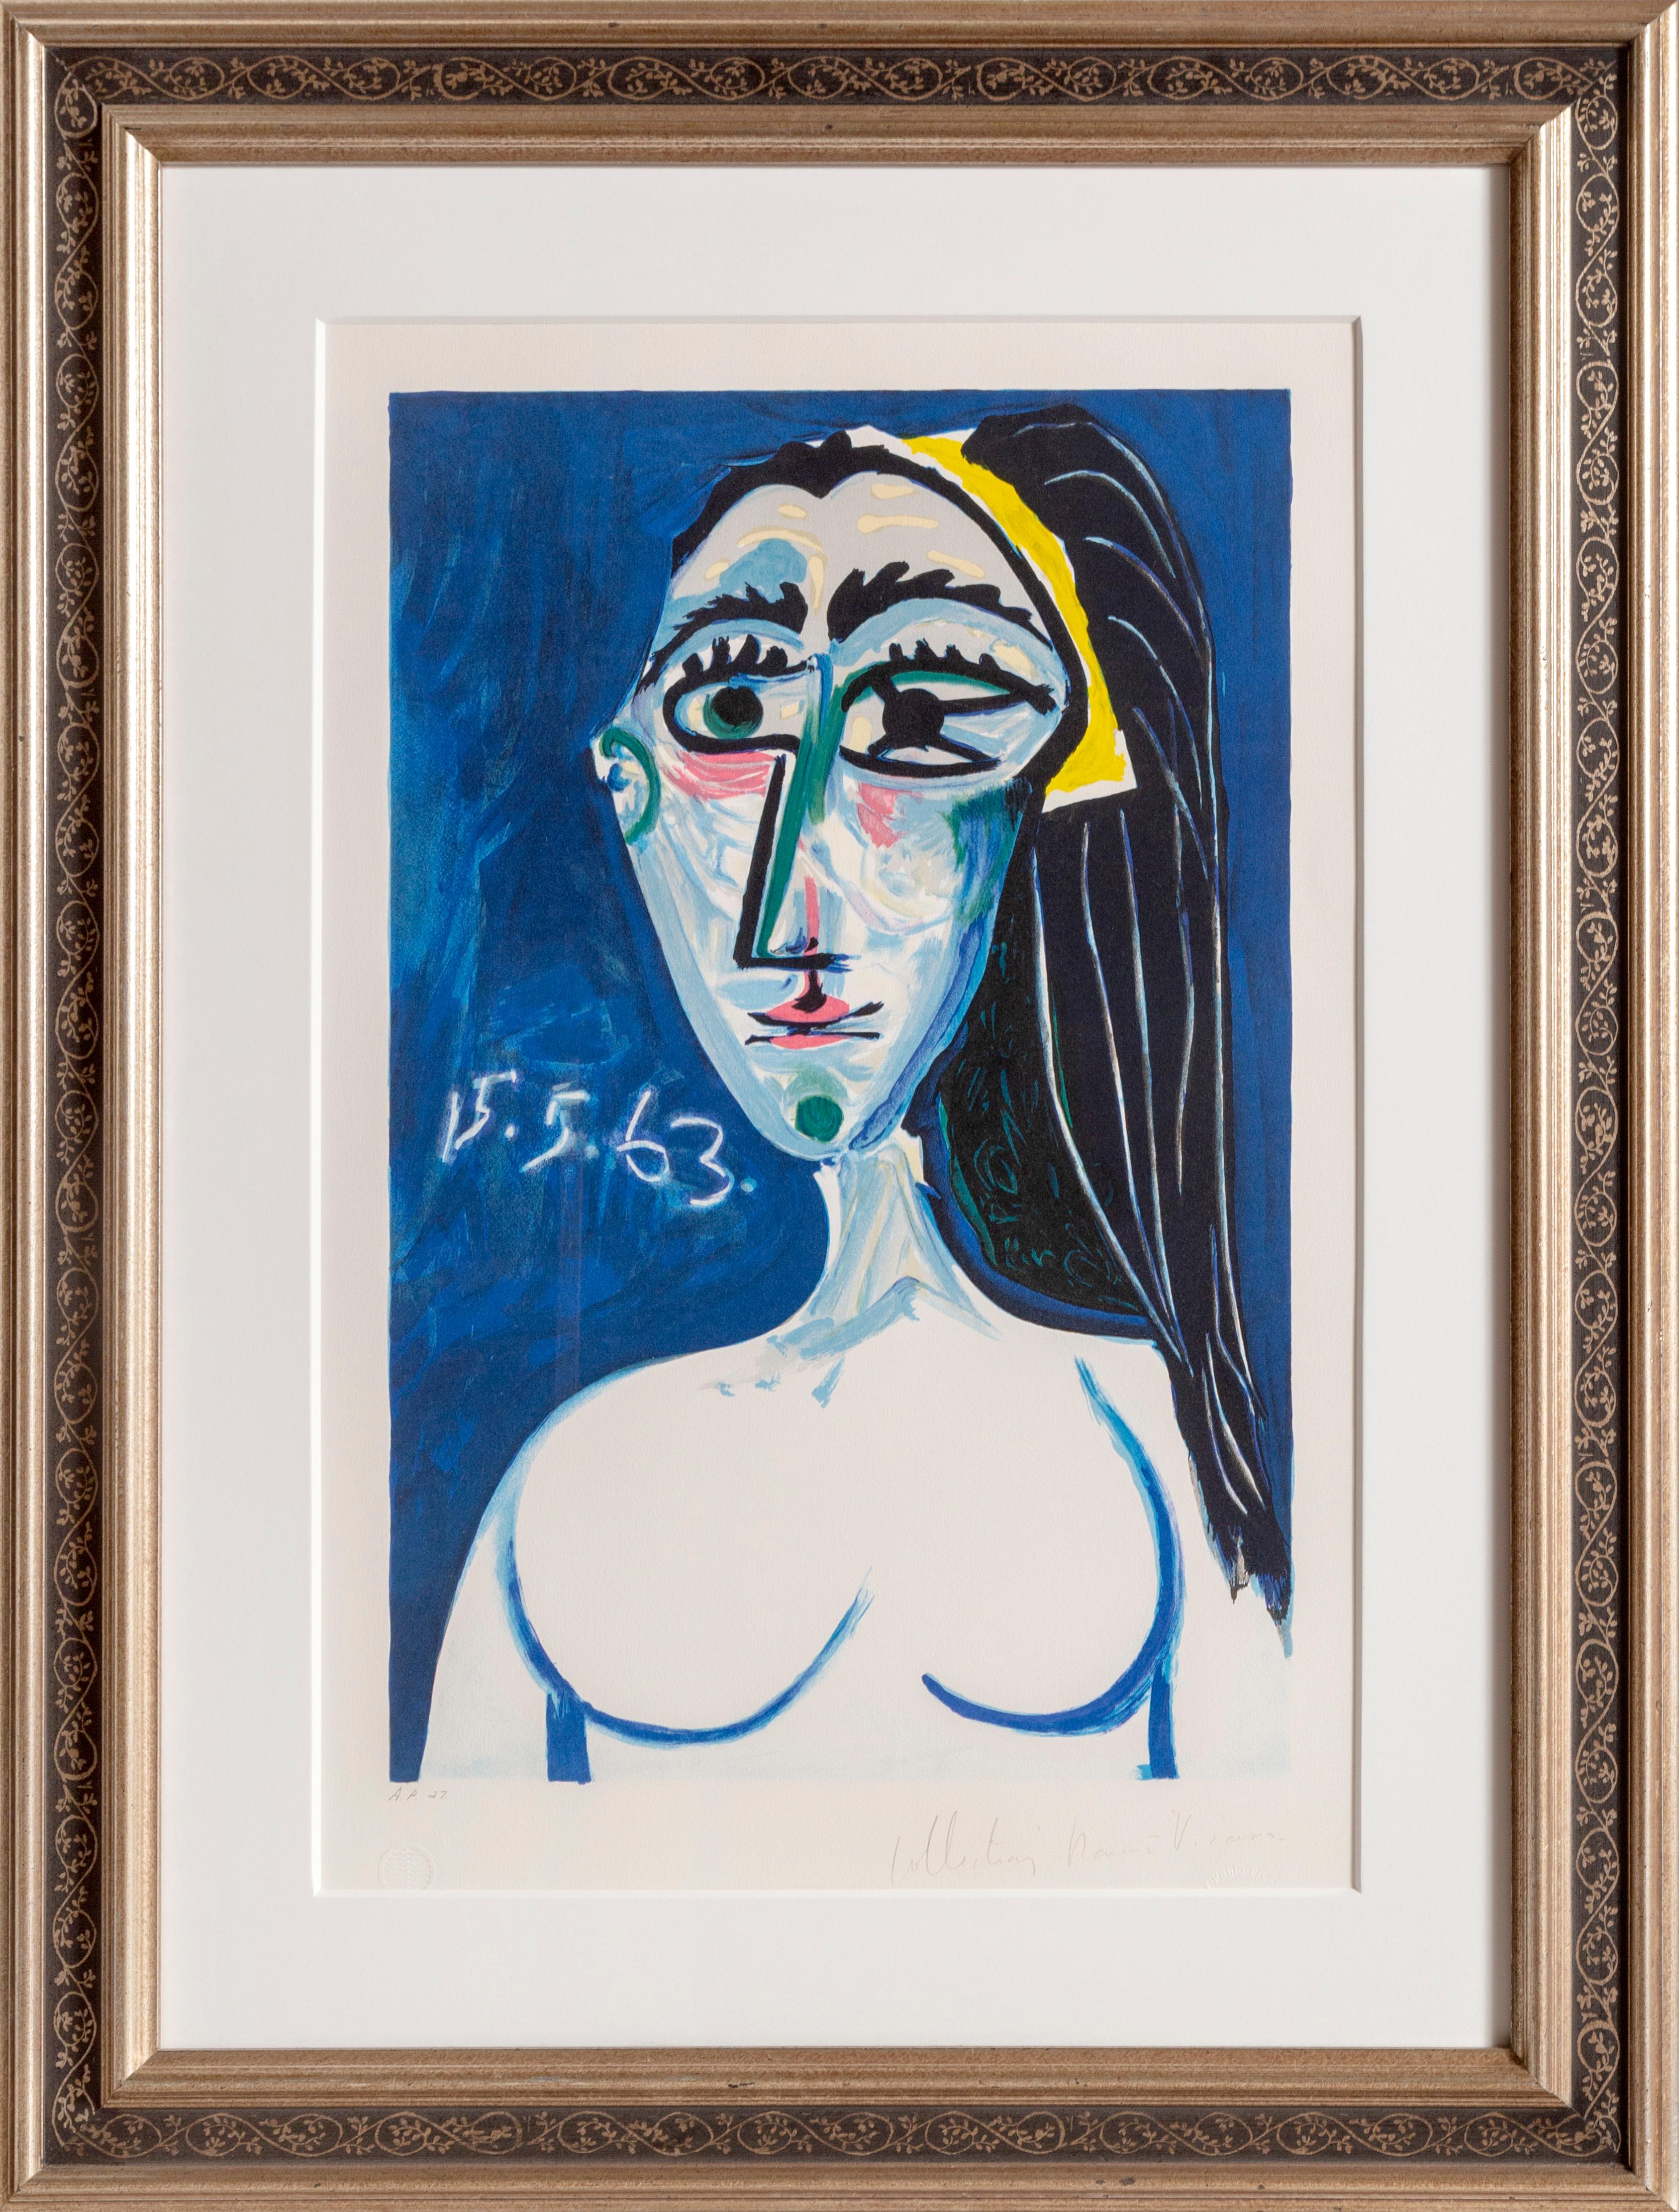 Une lithographie provenant de la Collection SALE de Marina Picasso d'après le tableau de Pablo Picasso "Buste de Femme Nue Face (Jacqueline Roque)". La peinture originale a été achevée en 1963. Dans les années 1970, après la mort de Picasso, Marina